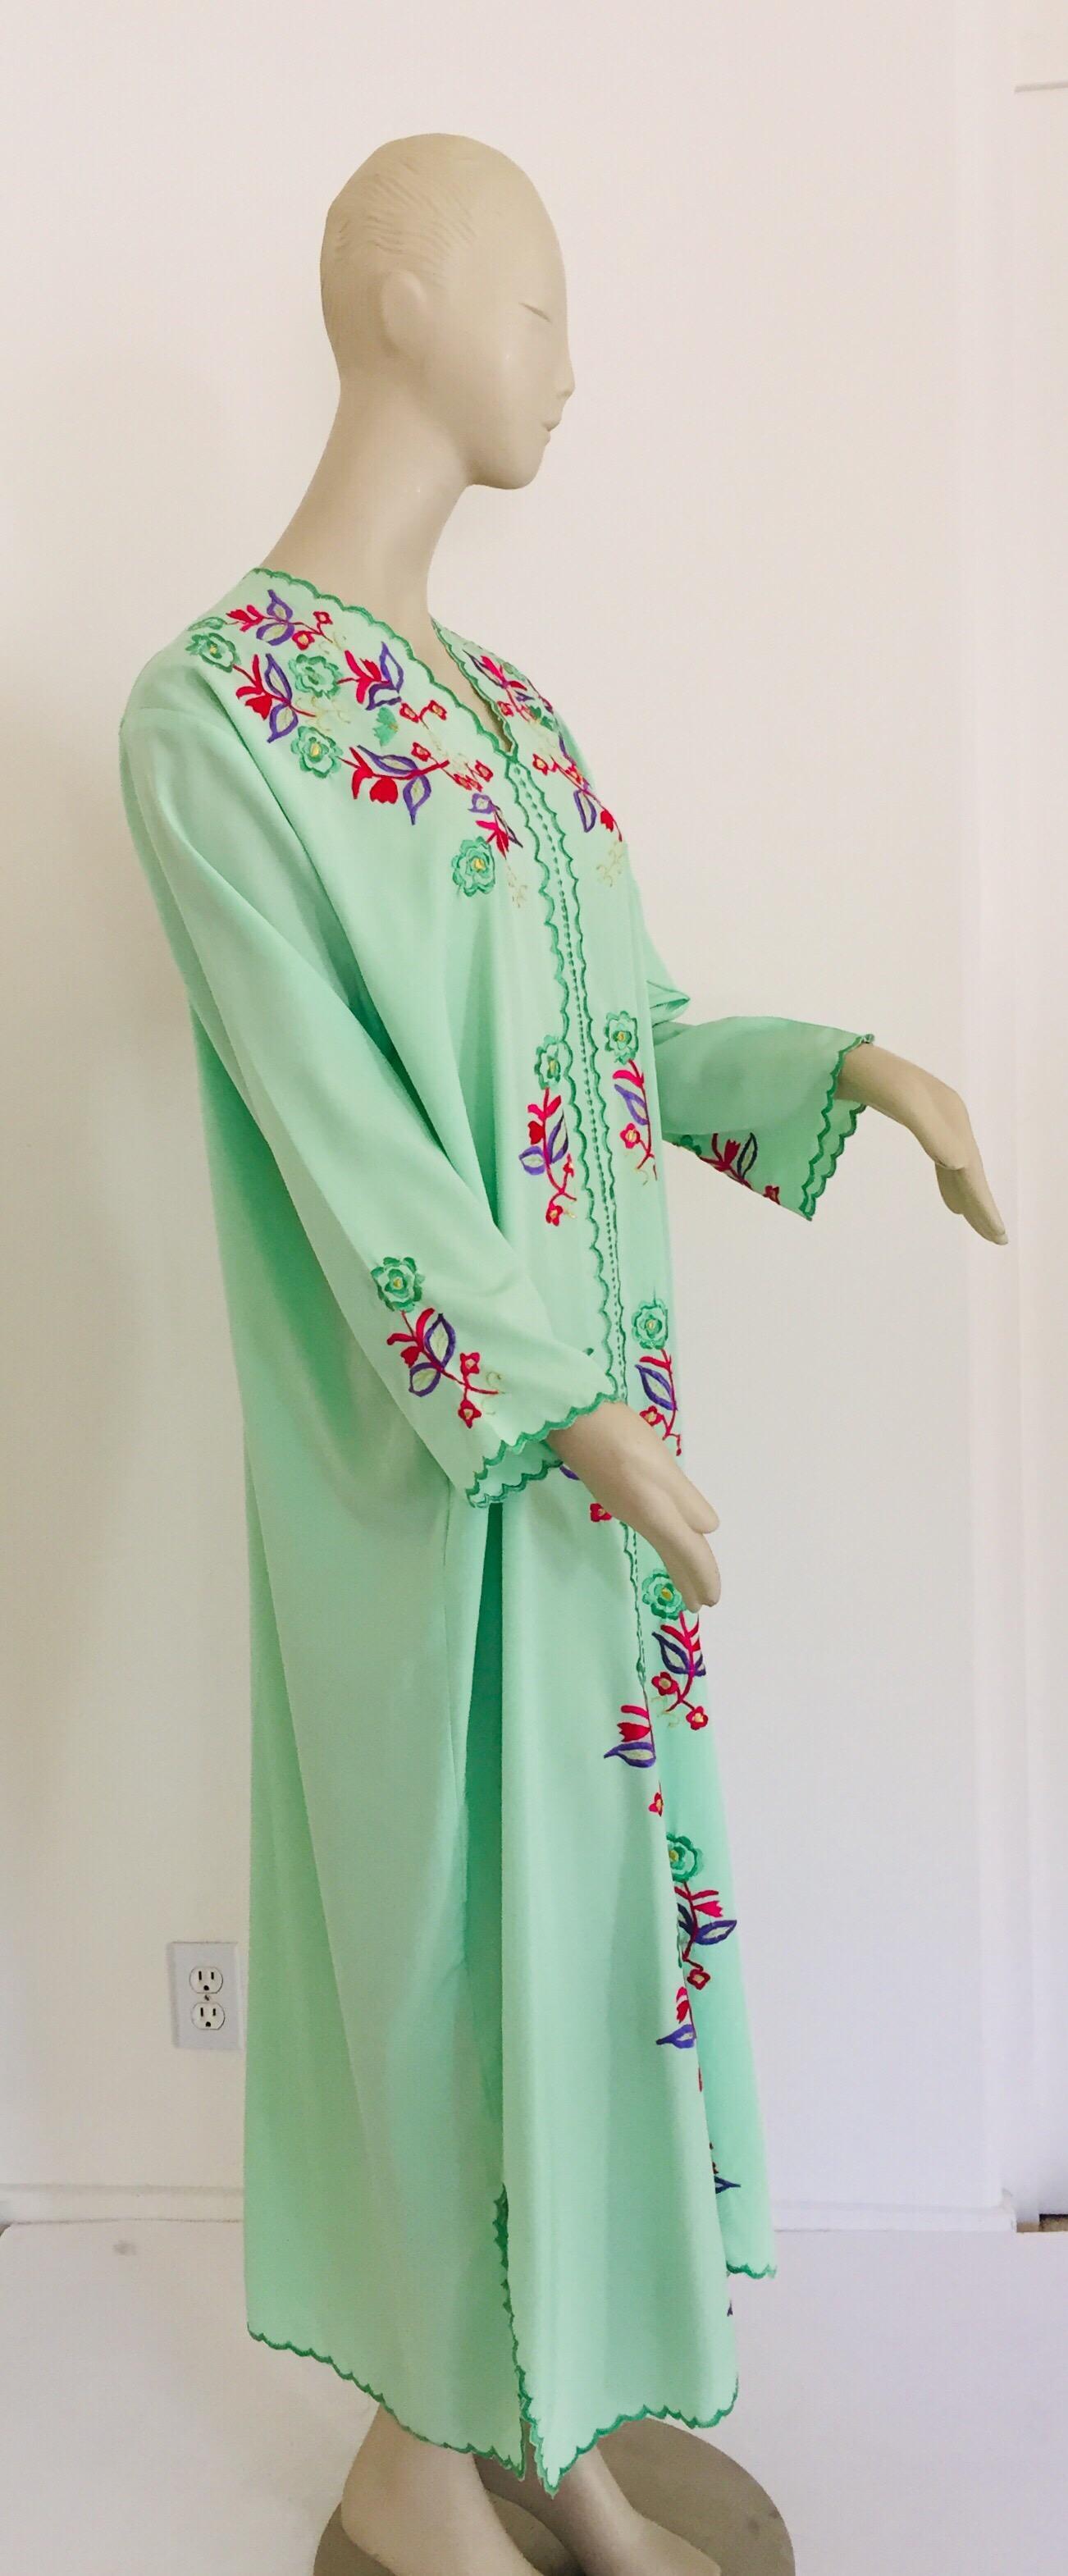 Elegant caftan marocain avec motifs floraux brodés,
vers les années 1970.
Le kaftan présente une encolure traditionnelle, avec des fentes latérales et des manches et un devant embellis.
Au Maroc, la mode conserve son style traditionnel hérité des